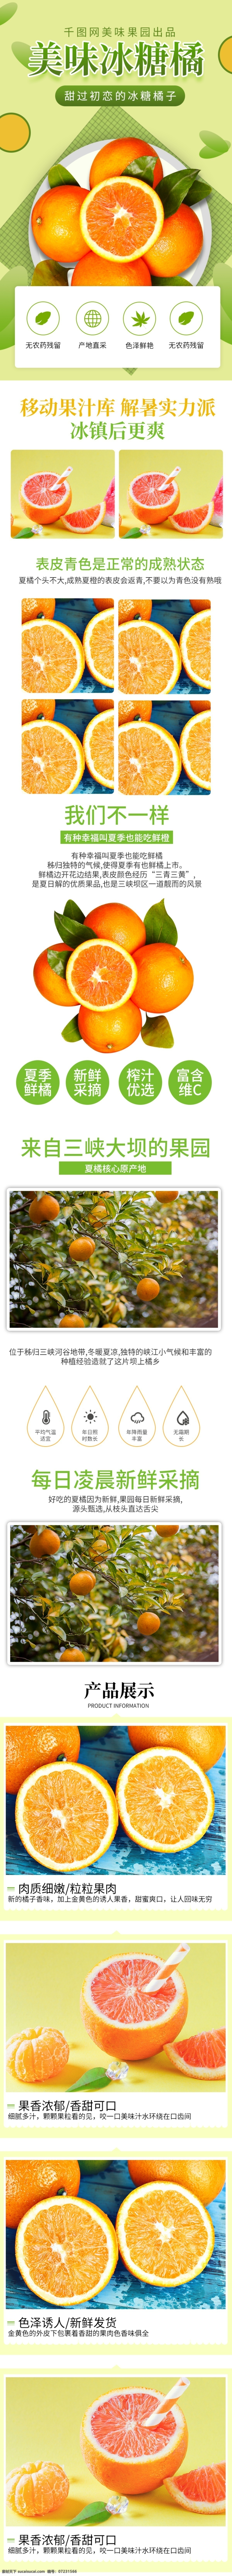 电商 淘宝 水果 生鲜 橘子 橙子 详情 页 电商淘宝 水果生鲜 详情页